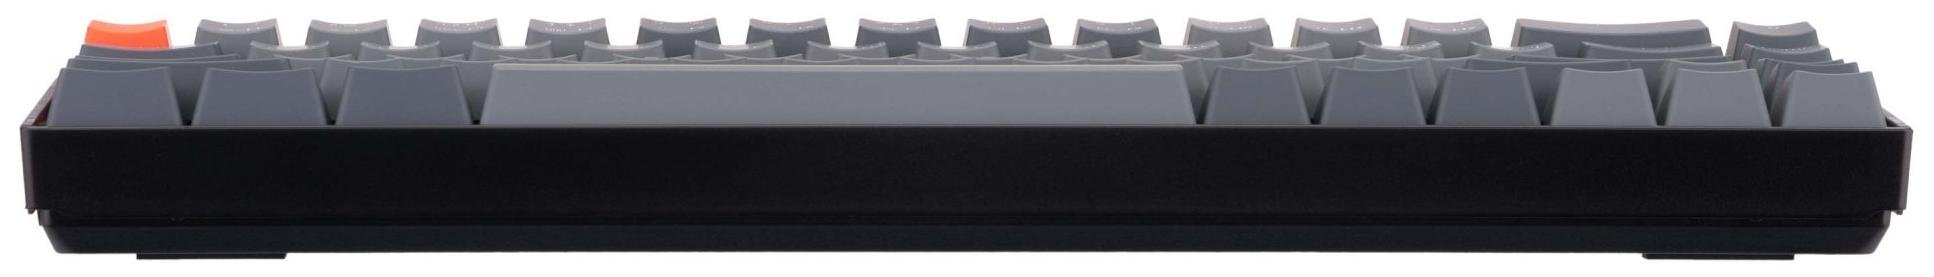 Клавіатура Keychron K6 68Key Gateron G Pro Blue White Led EN/UKR USB/WL Black (K6O2_KEYCHRON)